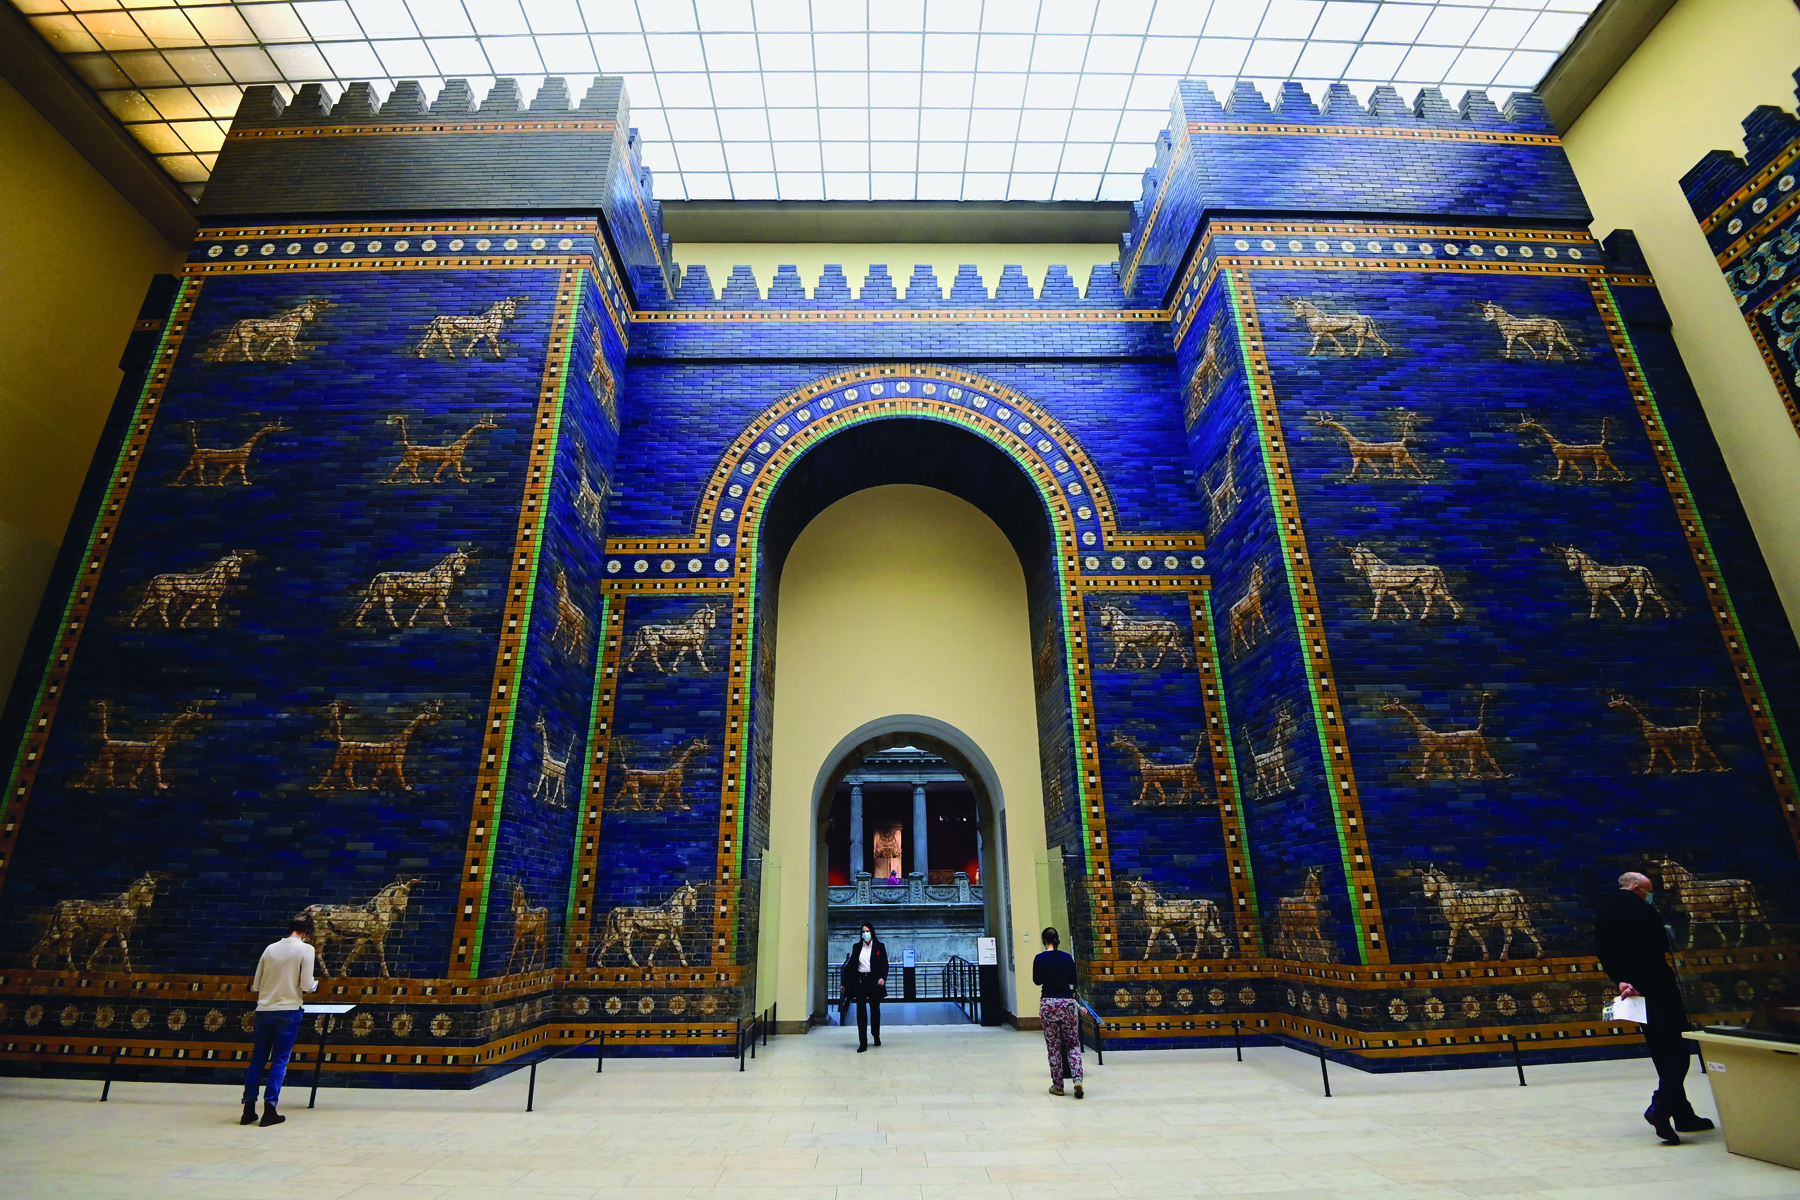 Fotografia. Pessoas observando um grande portal. Ele é formado por um grande muro azul, com animais desenhados em dourado. No centro, uma grande abertura em formato de arco.